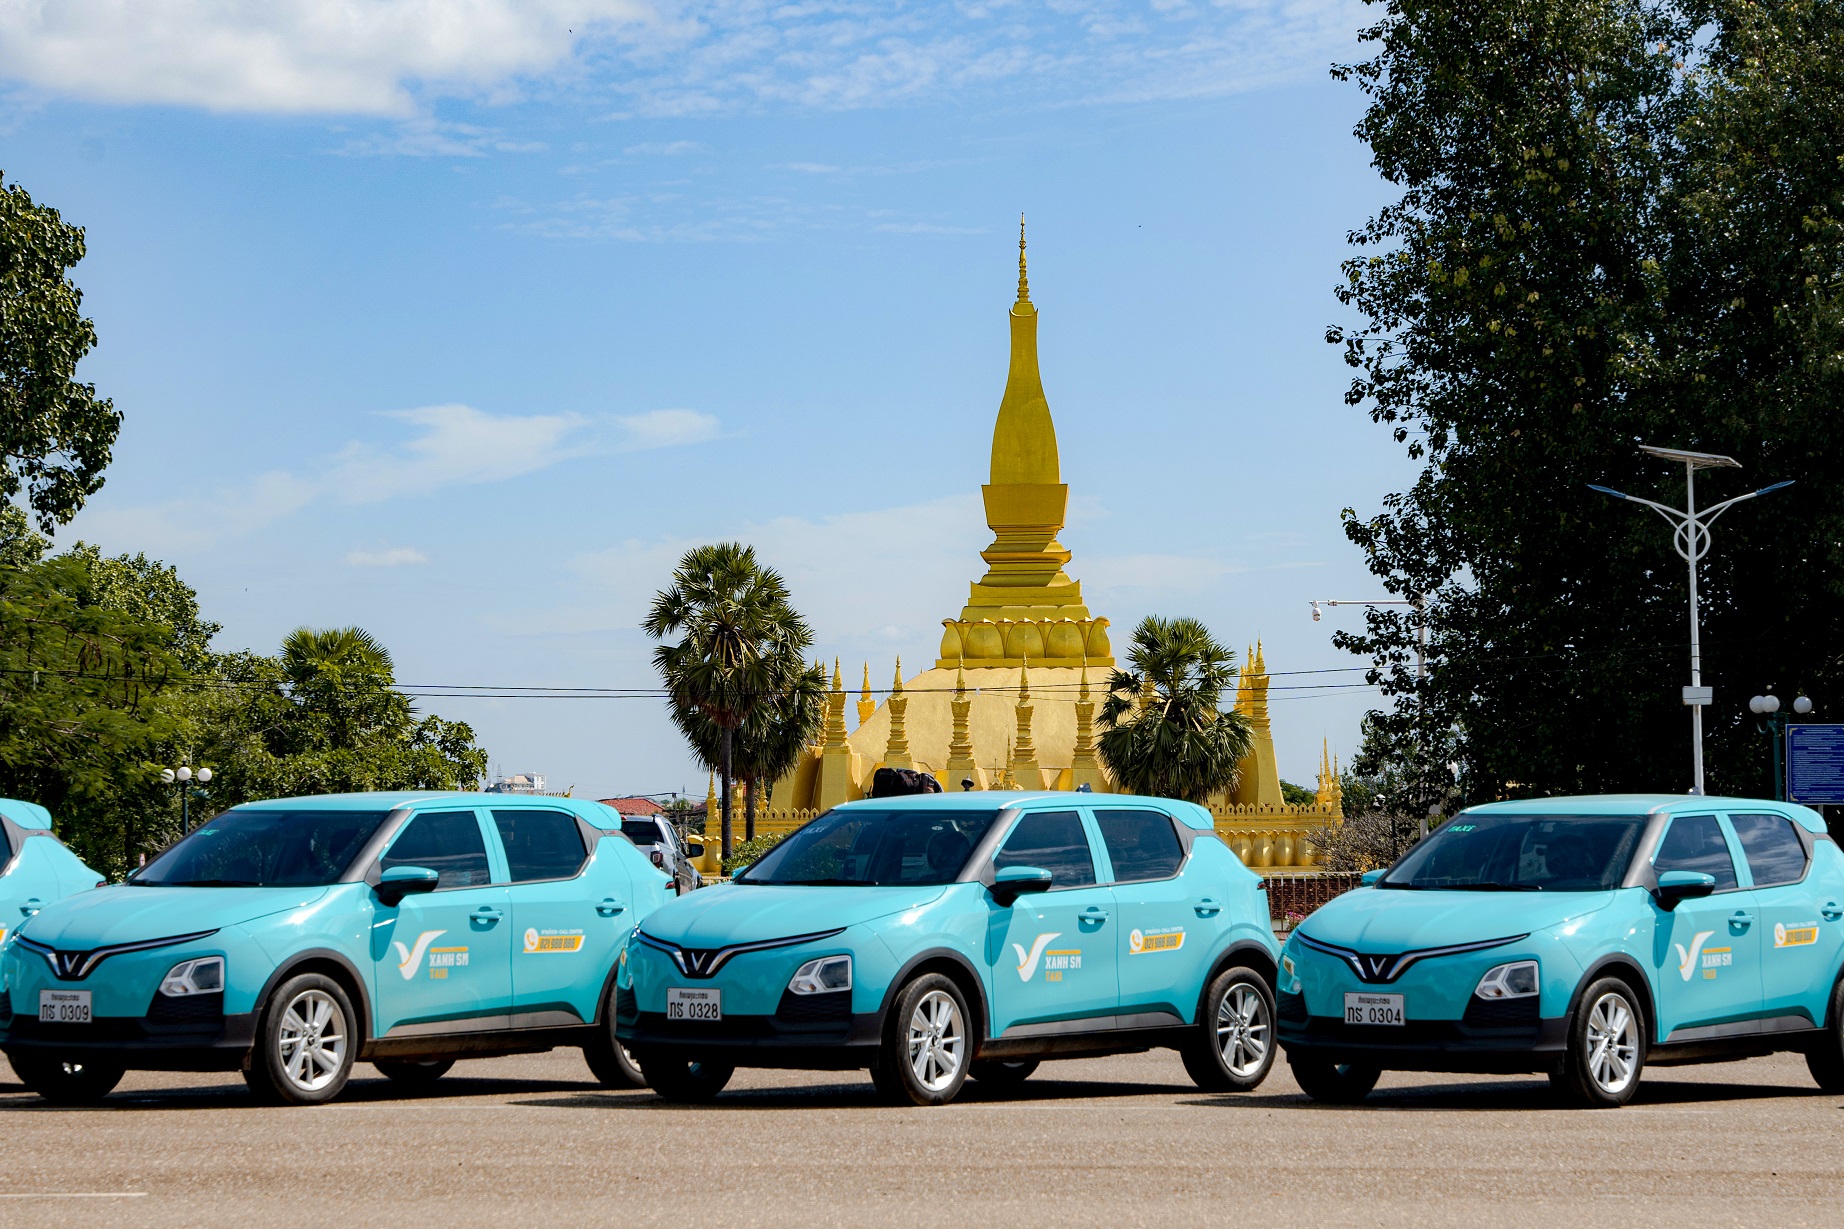 Cơ hội lớn của hãng taxi điện Xanh SM tại Lào - Ảnh 1.